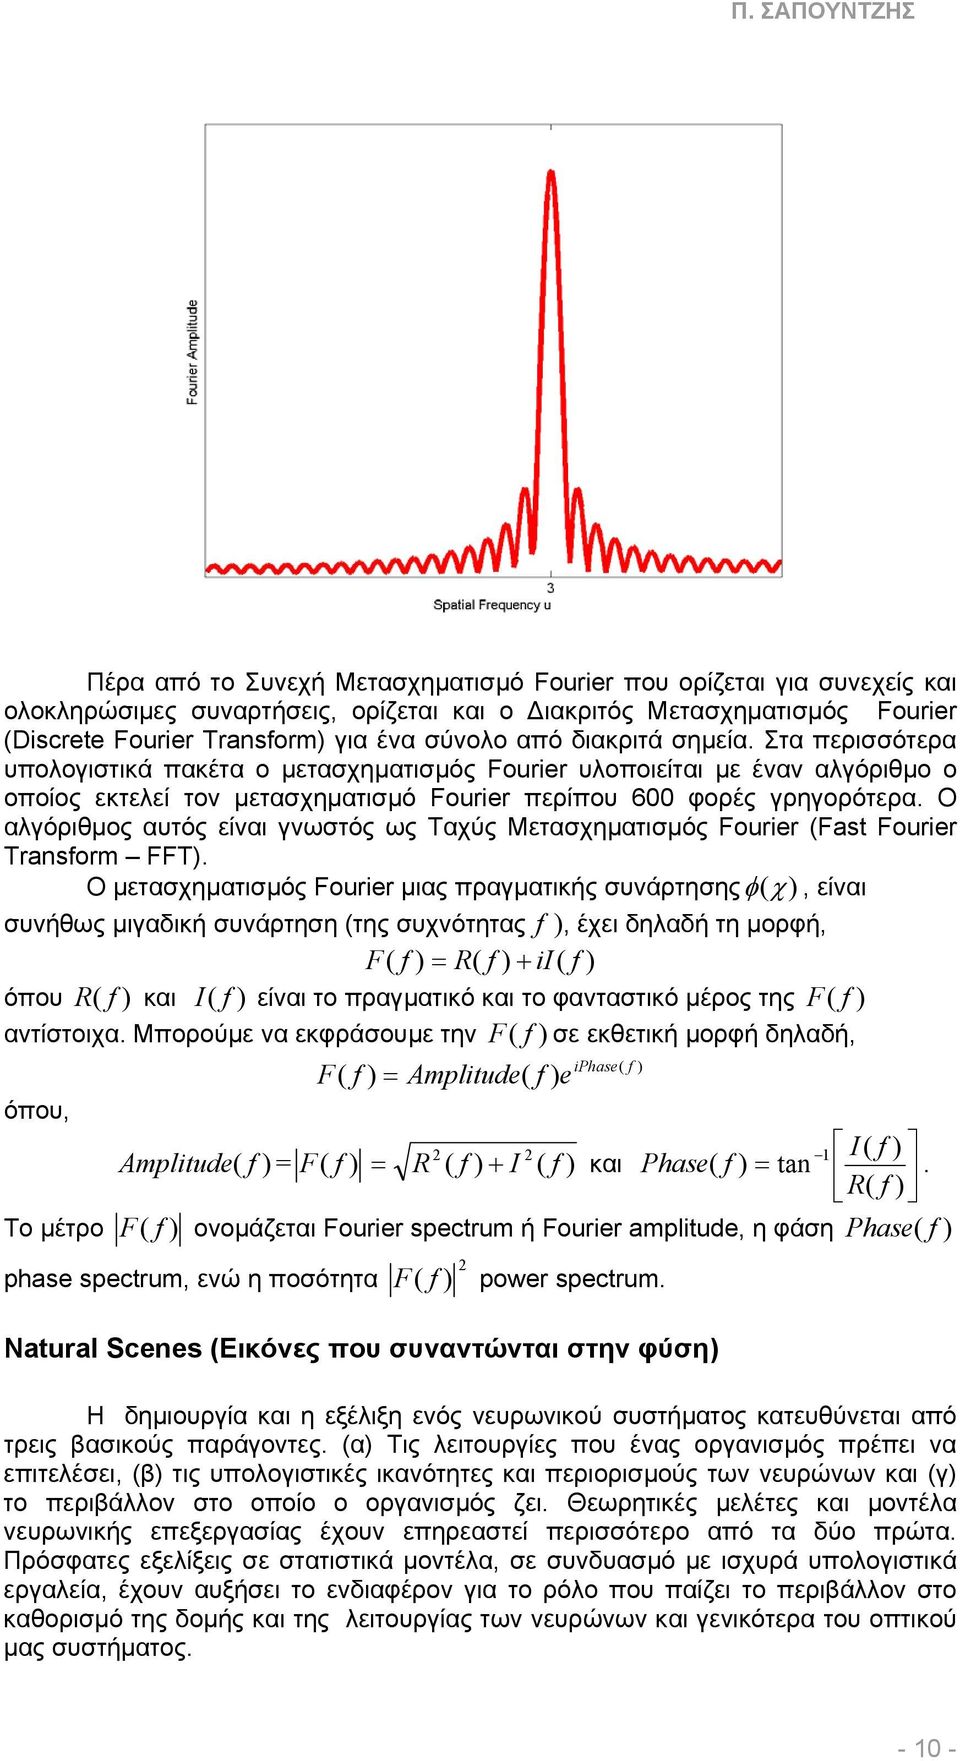 Ο αλγόριθµος αυτός είναι γνωστός ως Ταχύς Μετασχηµατισµός Fourier (Fast Fourier Transform FFT).